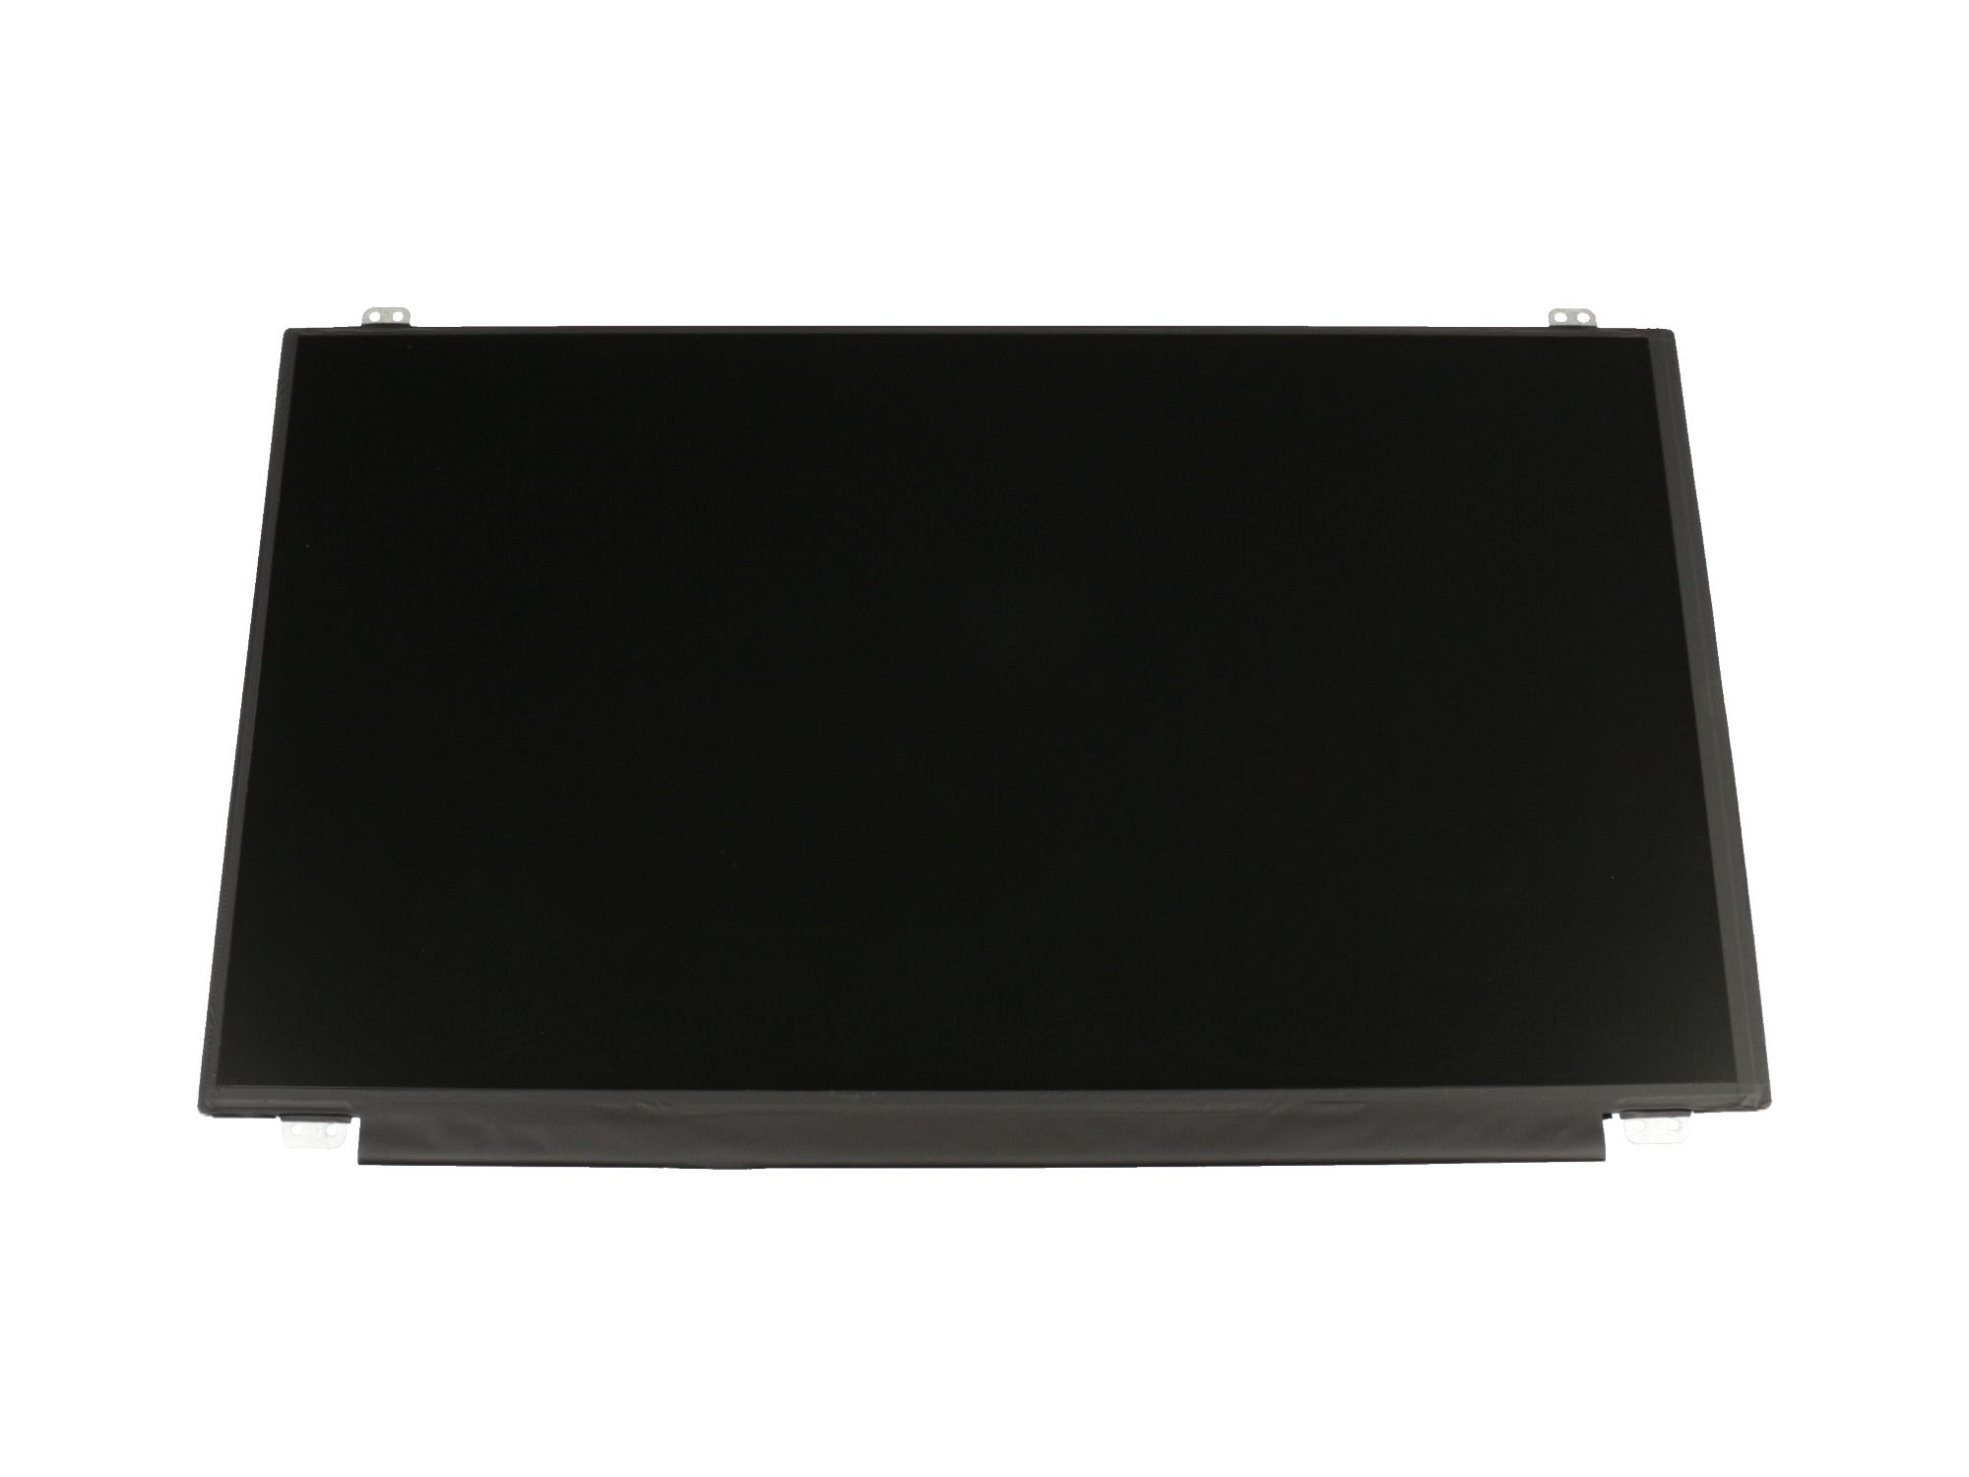 LG LP156WH3 Display (1366x768) matt slimline